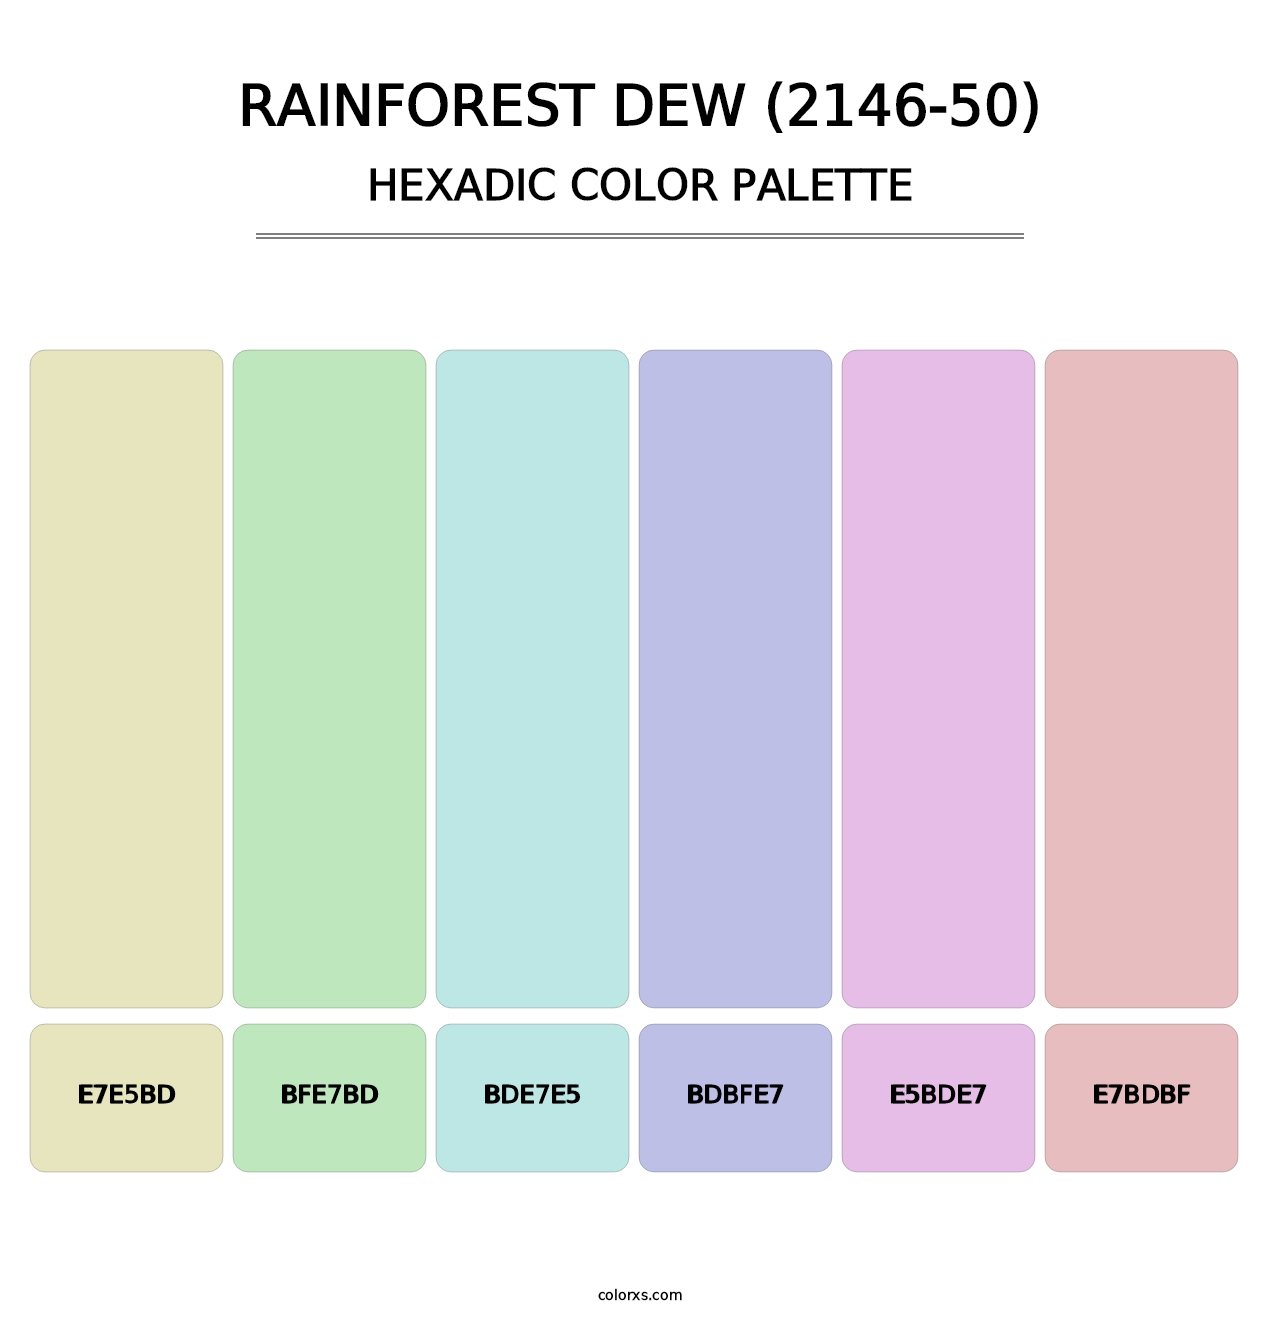 Rainforest Dew (2146-50) - Hexadic Color Palette